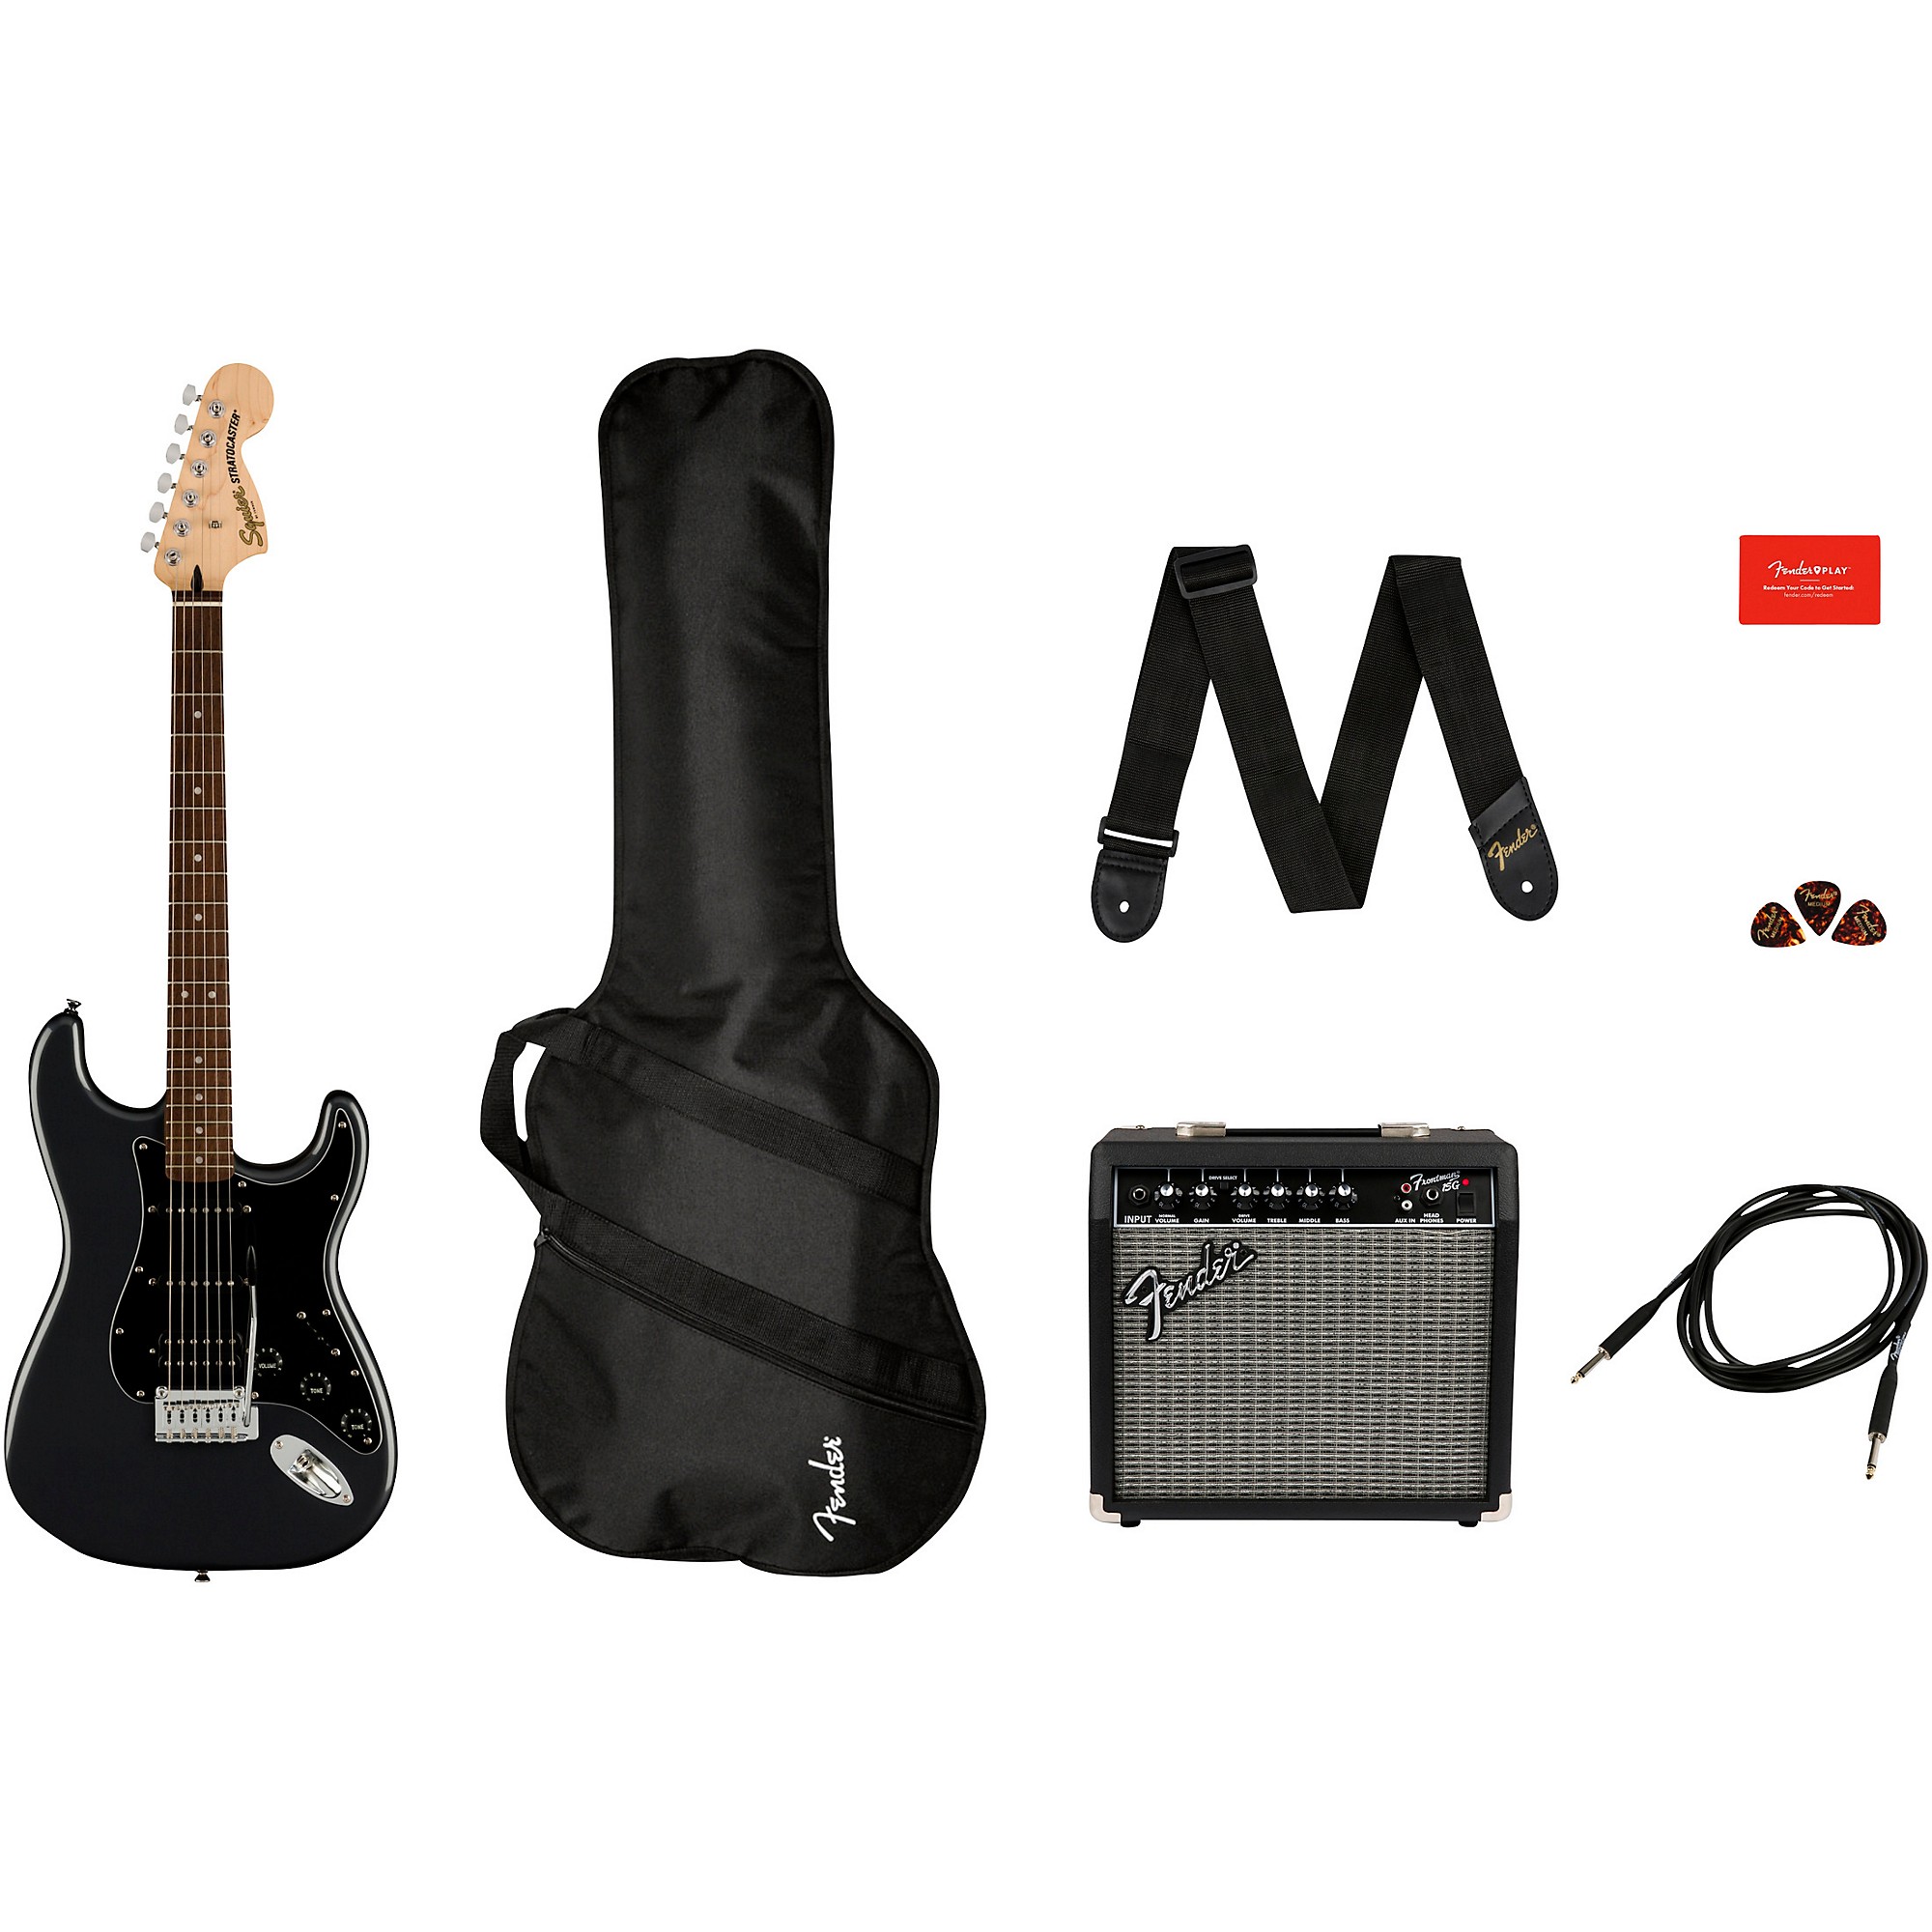 Fender Frontman 15G 15 watt Guitar Amp for sale online